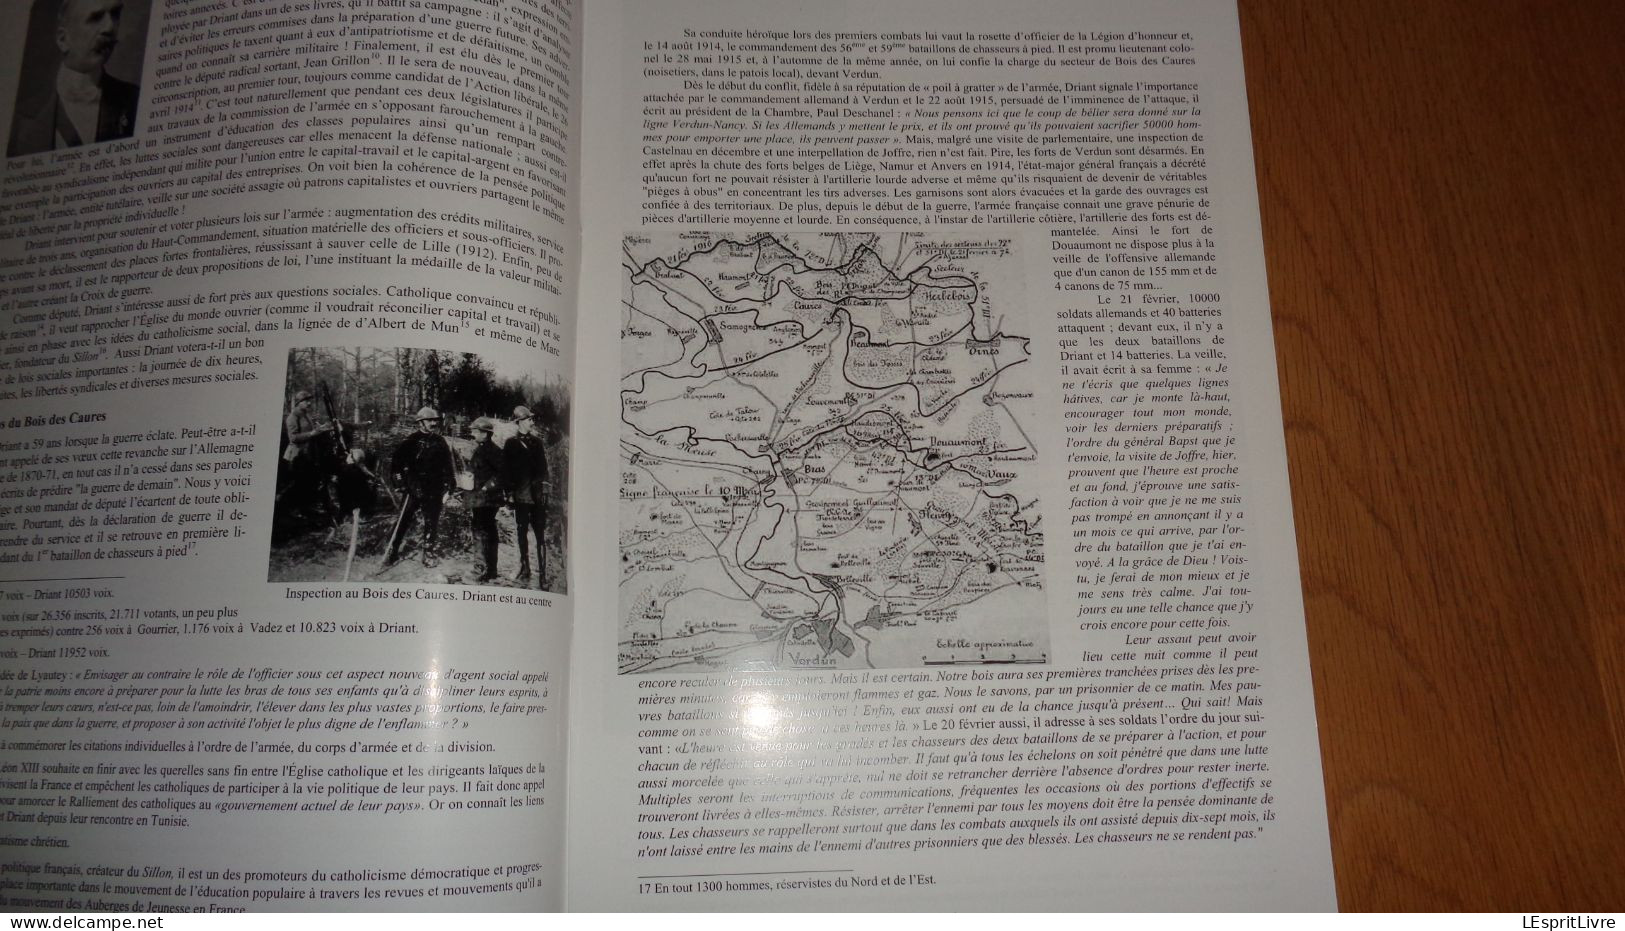 Le Magazine C H A V N° 11 Régionalisme Chavignon Aisne Histoire Guerre 14 18 Hitler à Margival 40 45 V STO Bois Caures - Picardie - Nord-Pas-de-Calais